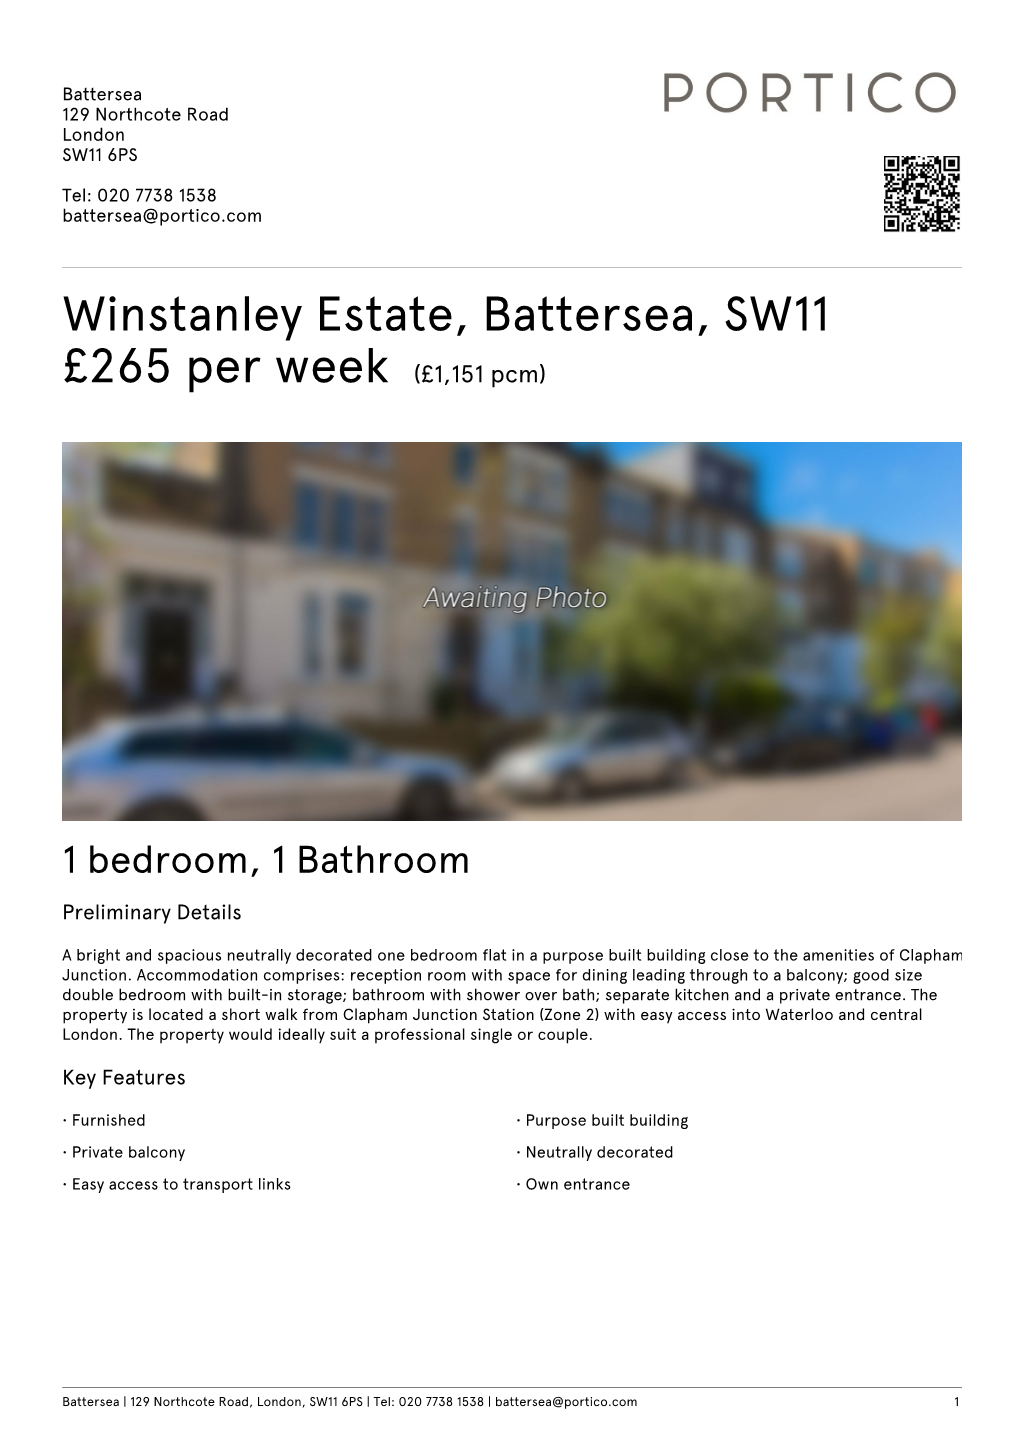 Winstanley Estate, Battersea, SW11 £265 Per Week